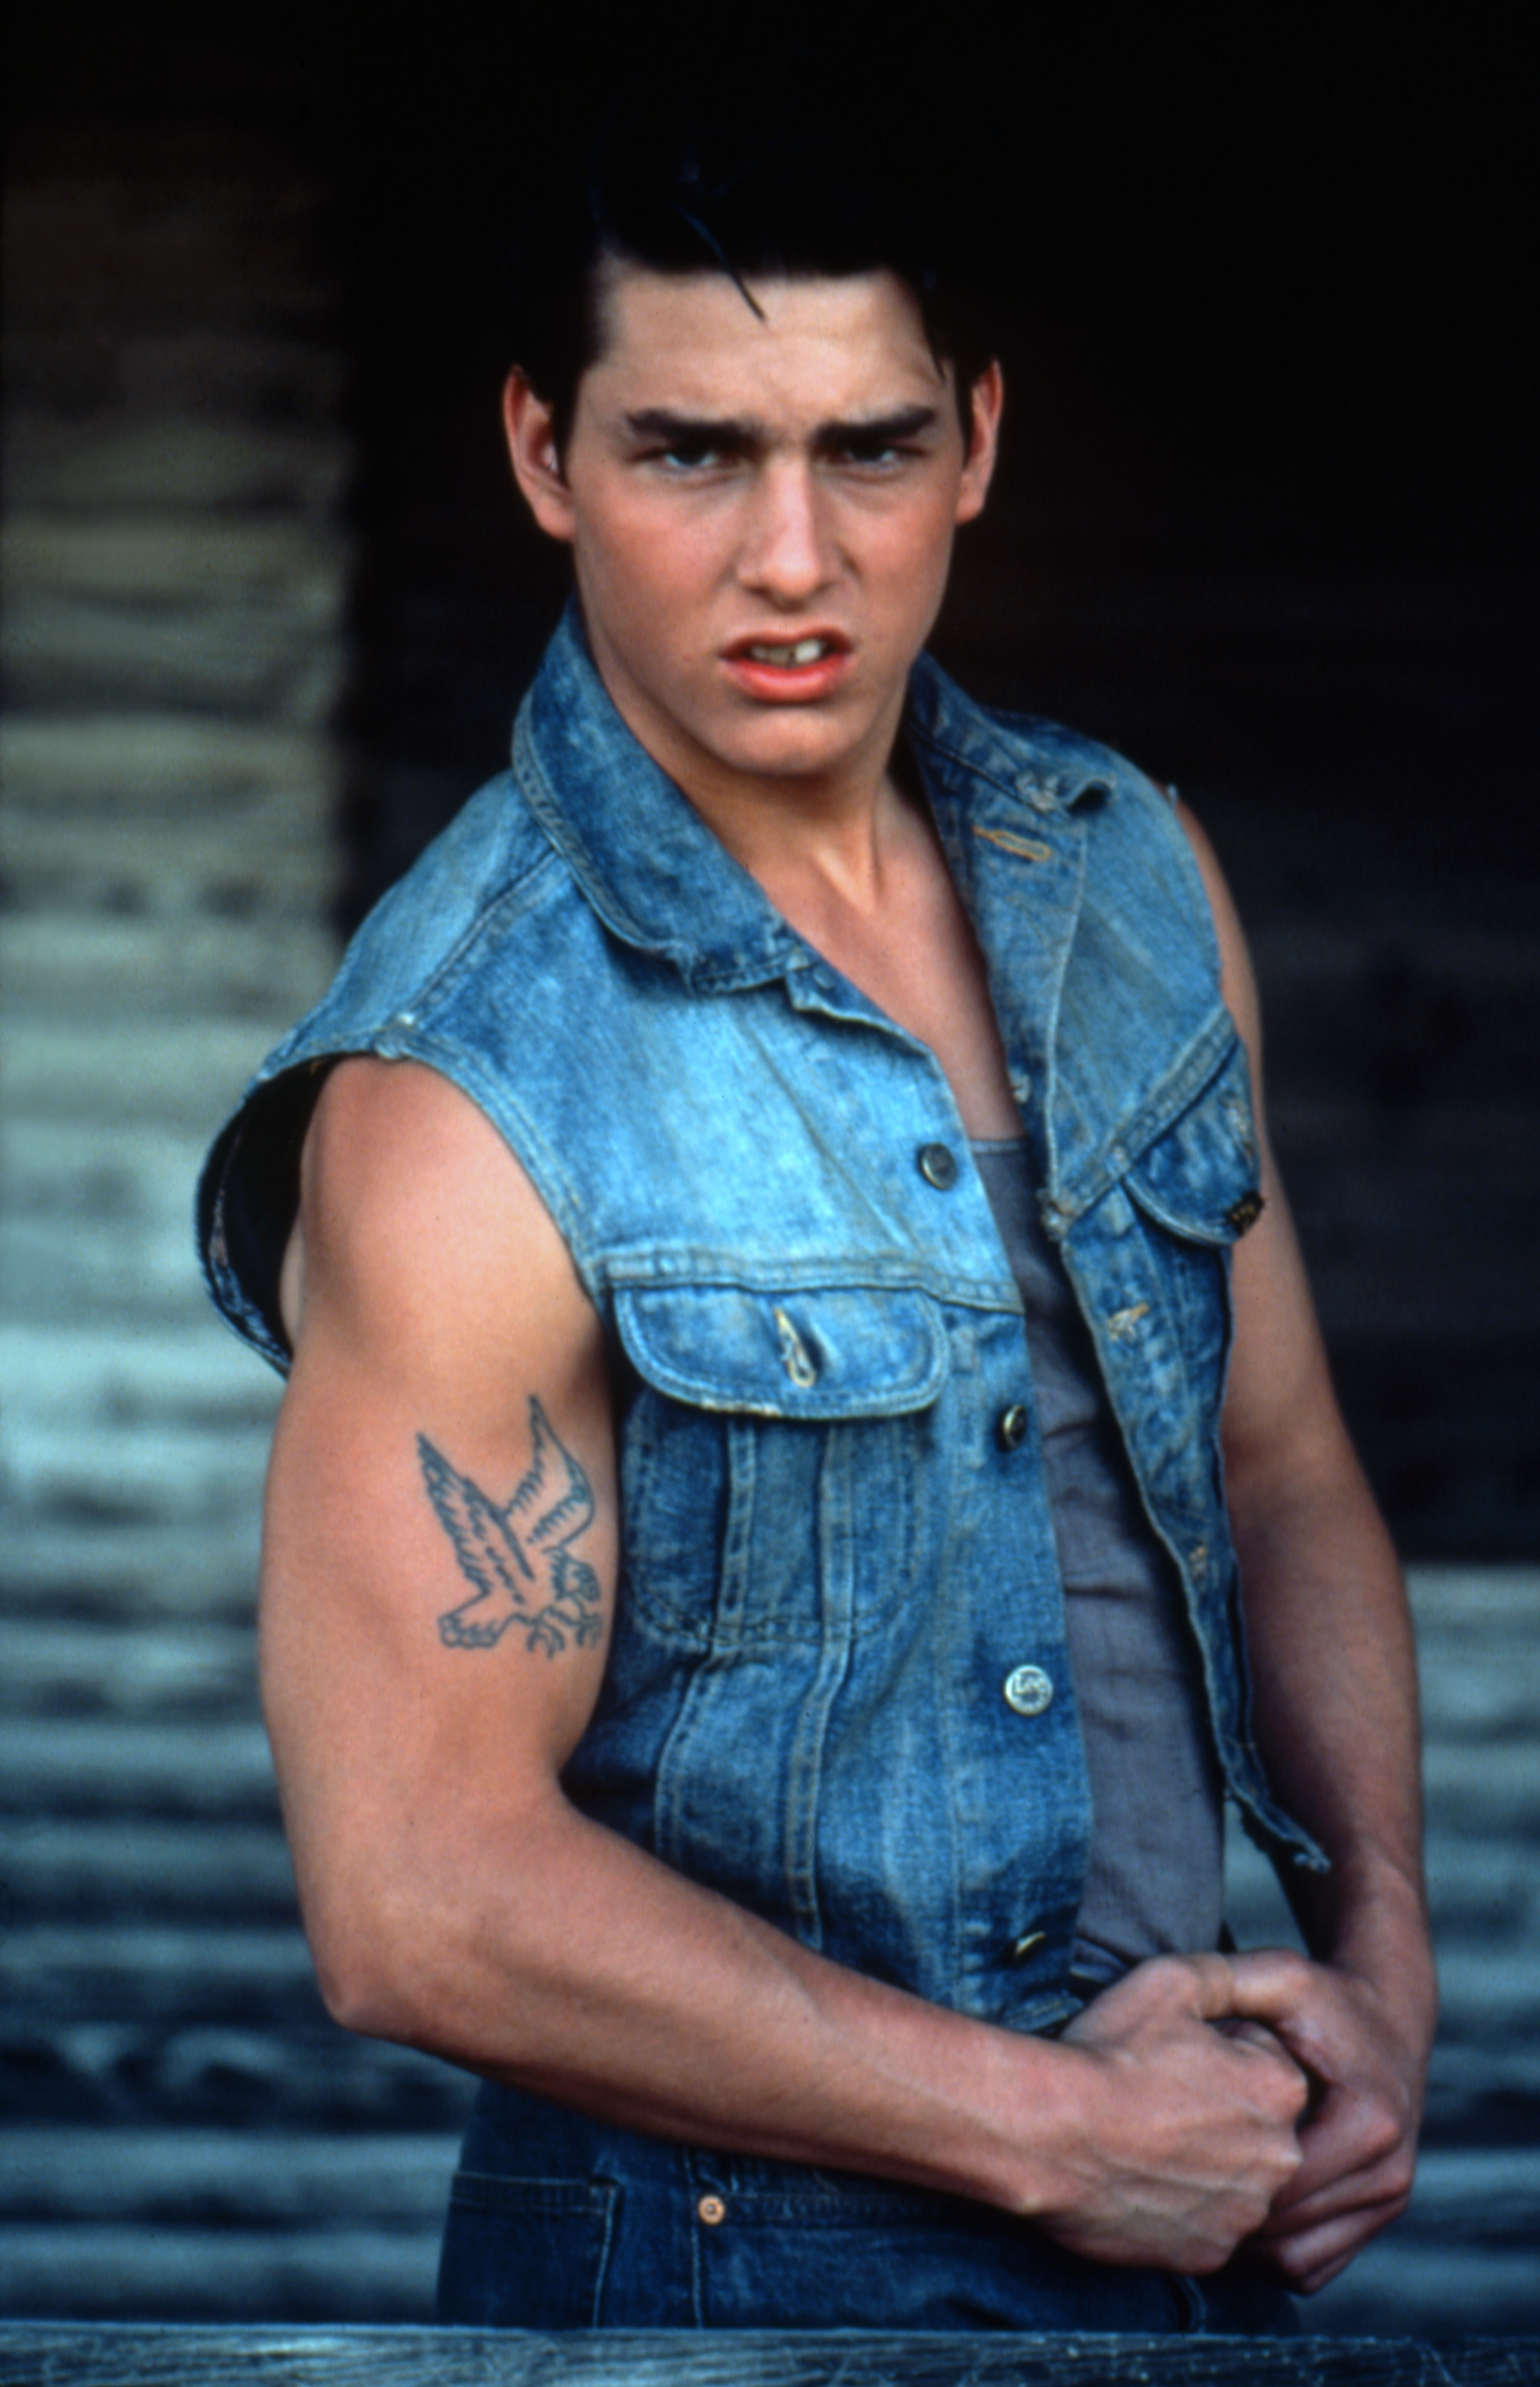 Tom Cruise en el plató de "The Outsiders" el 1 de enero de 1983. | Fuente: Getty Images